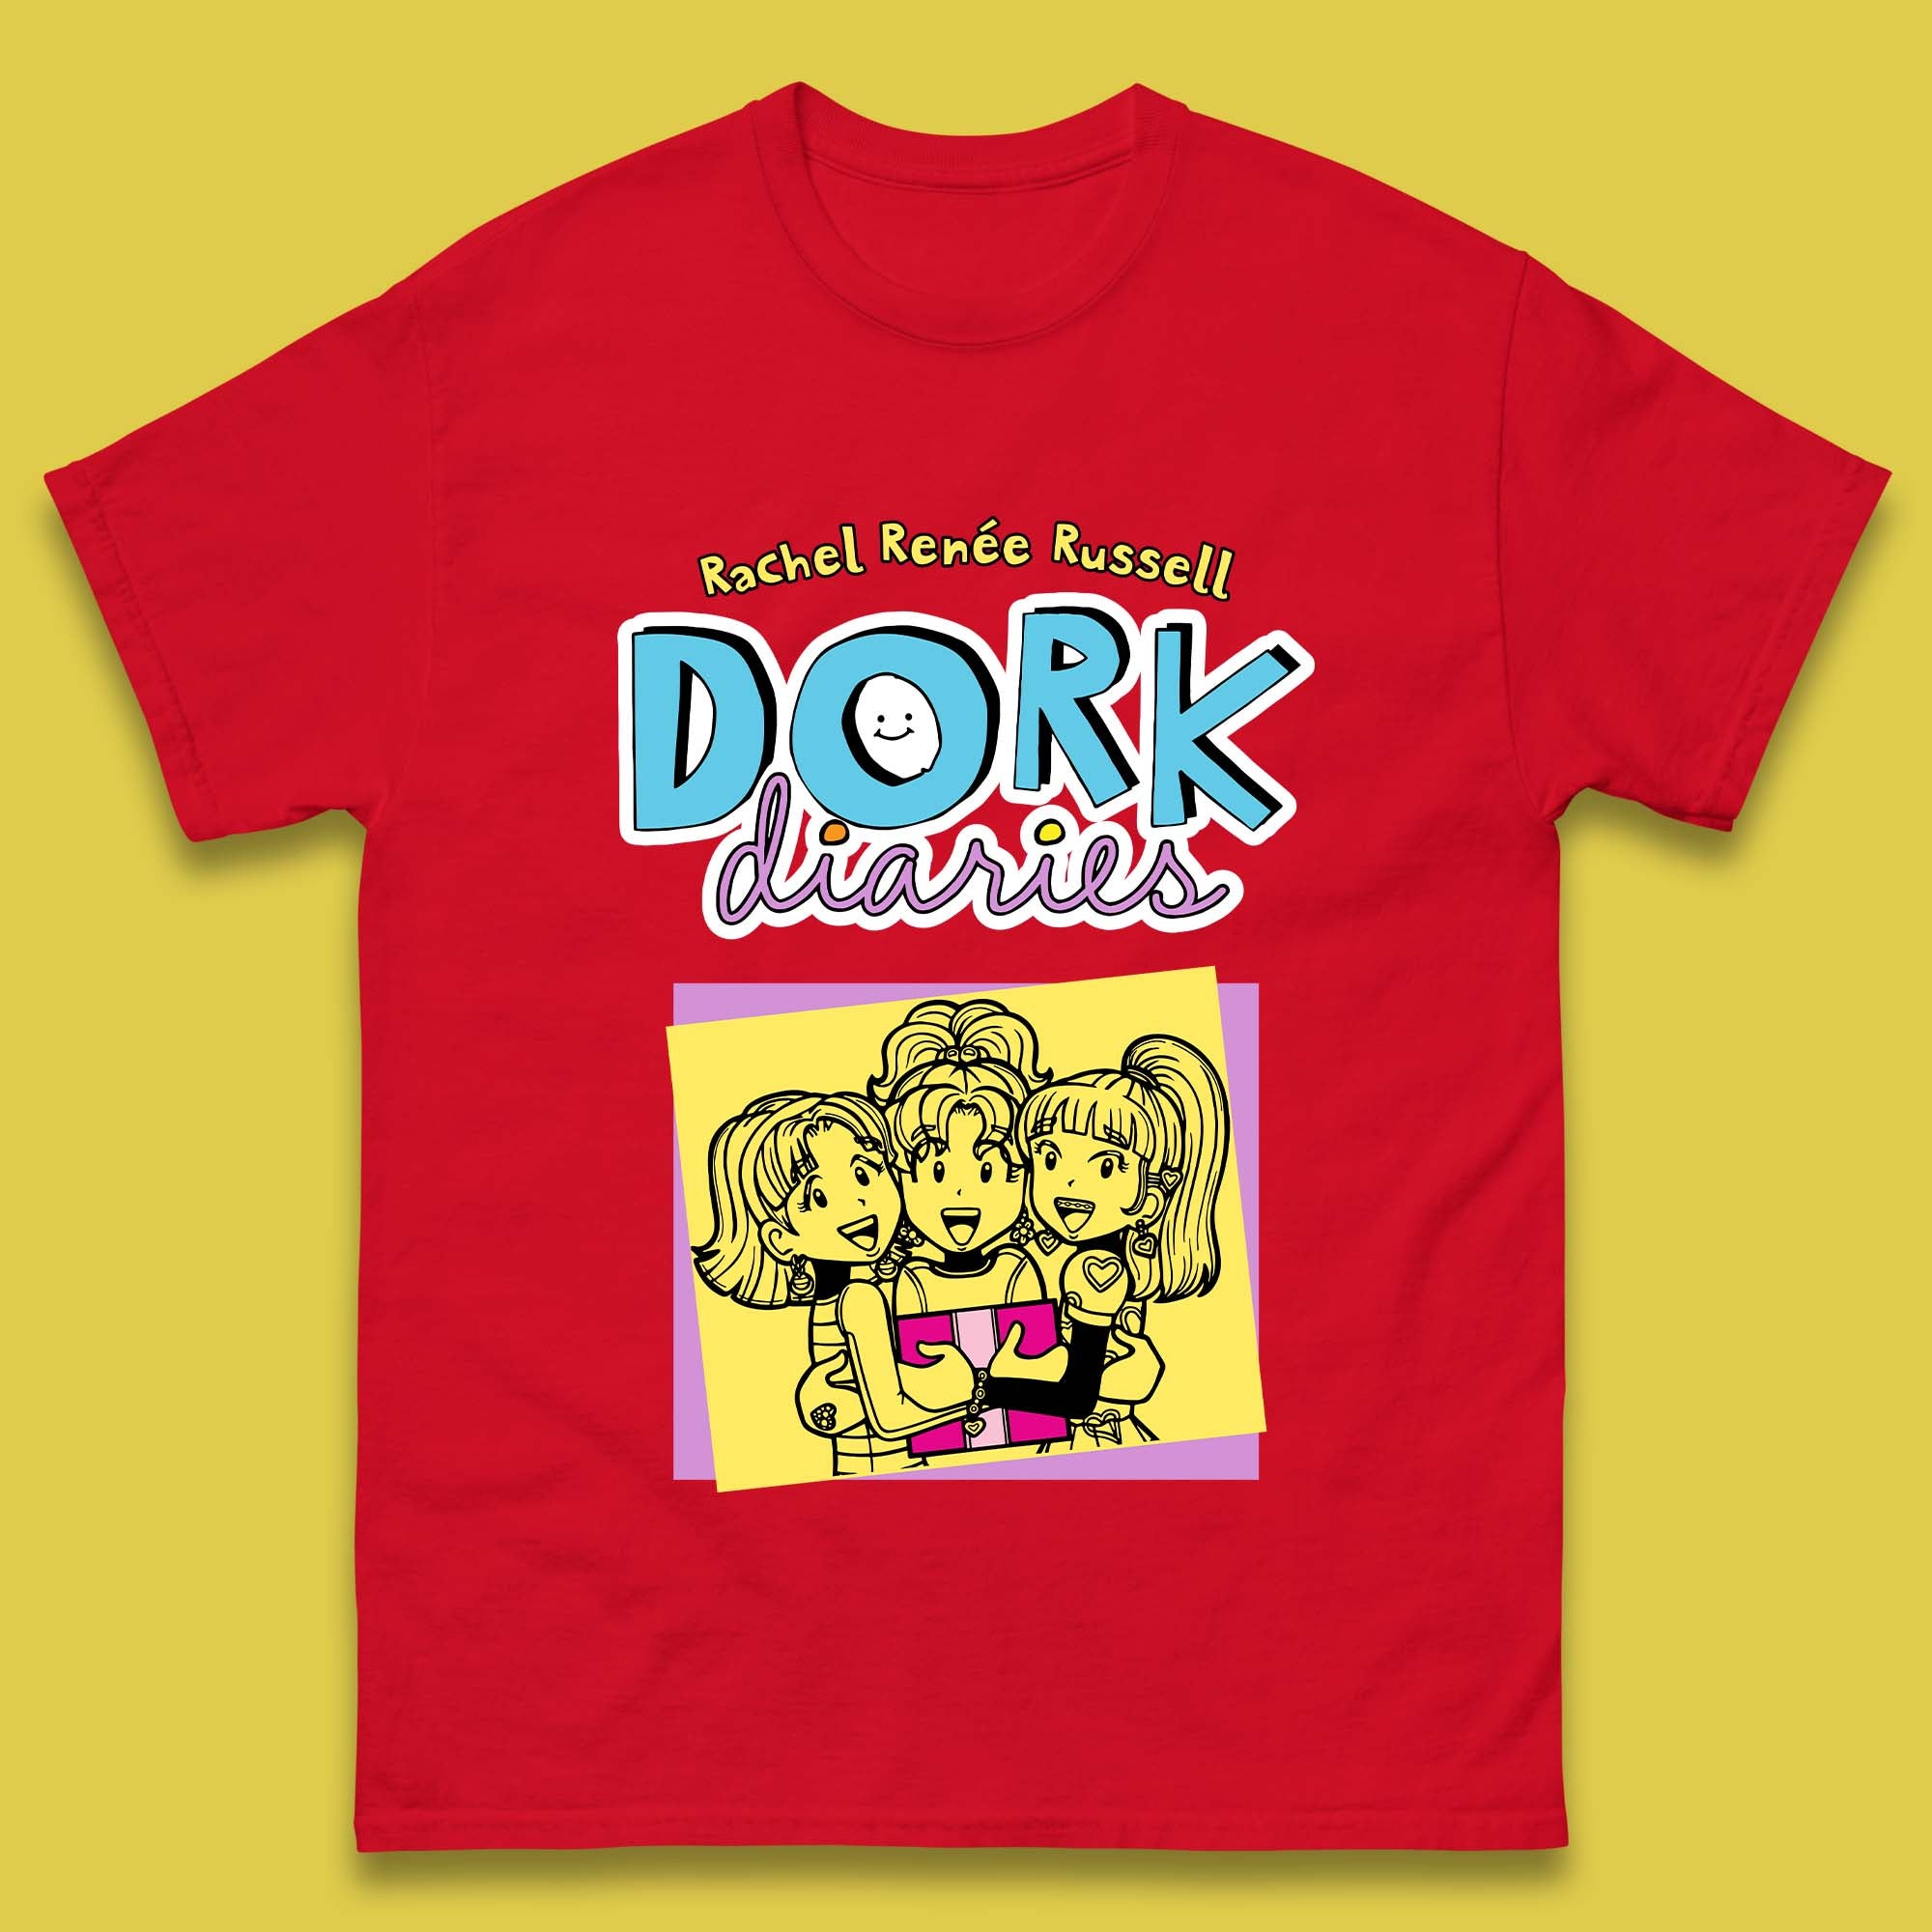 Dork Diaries Mens T-Shirt